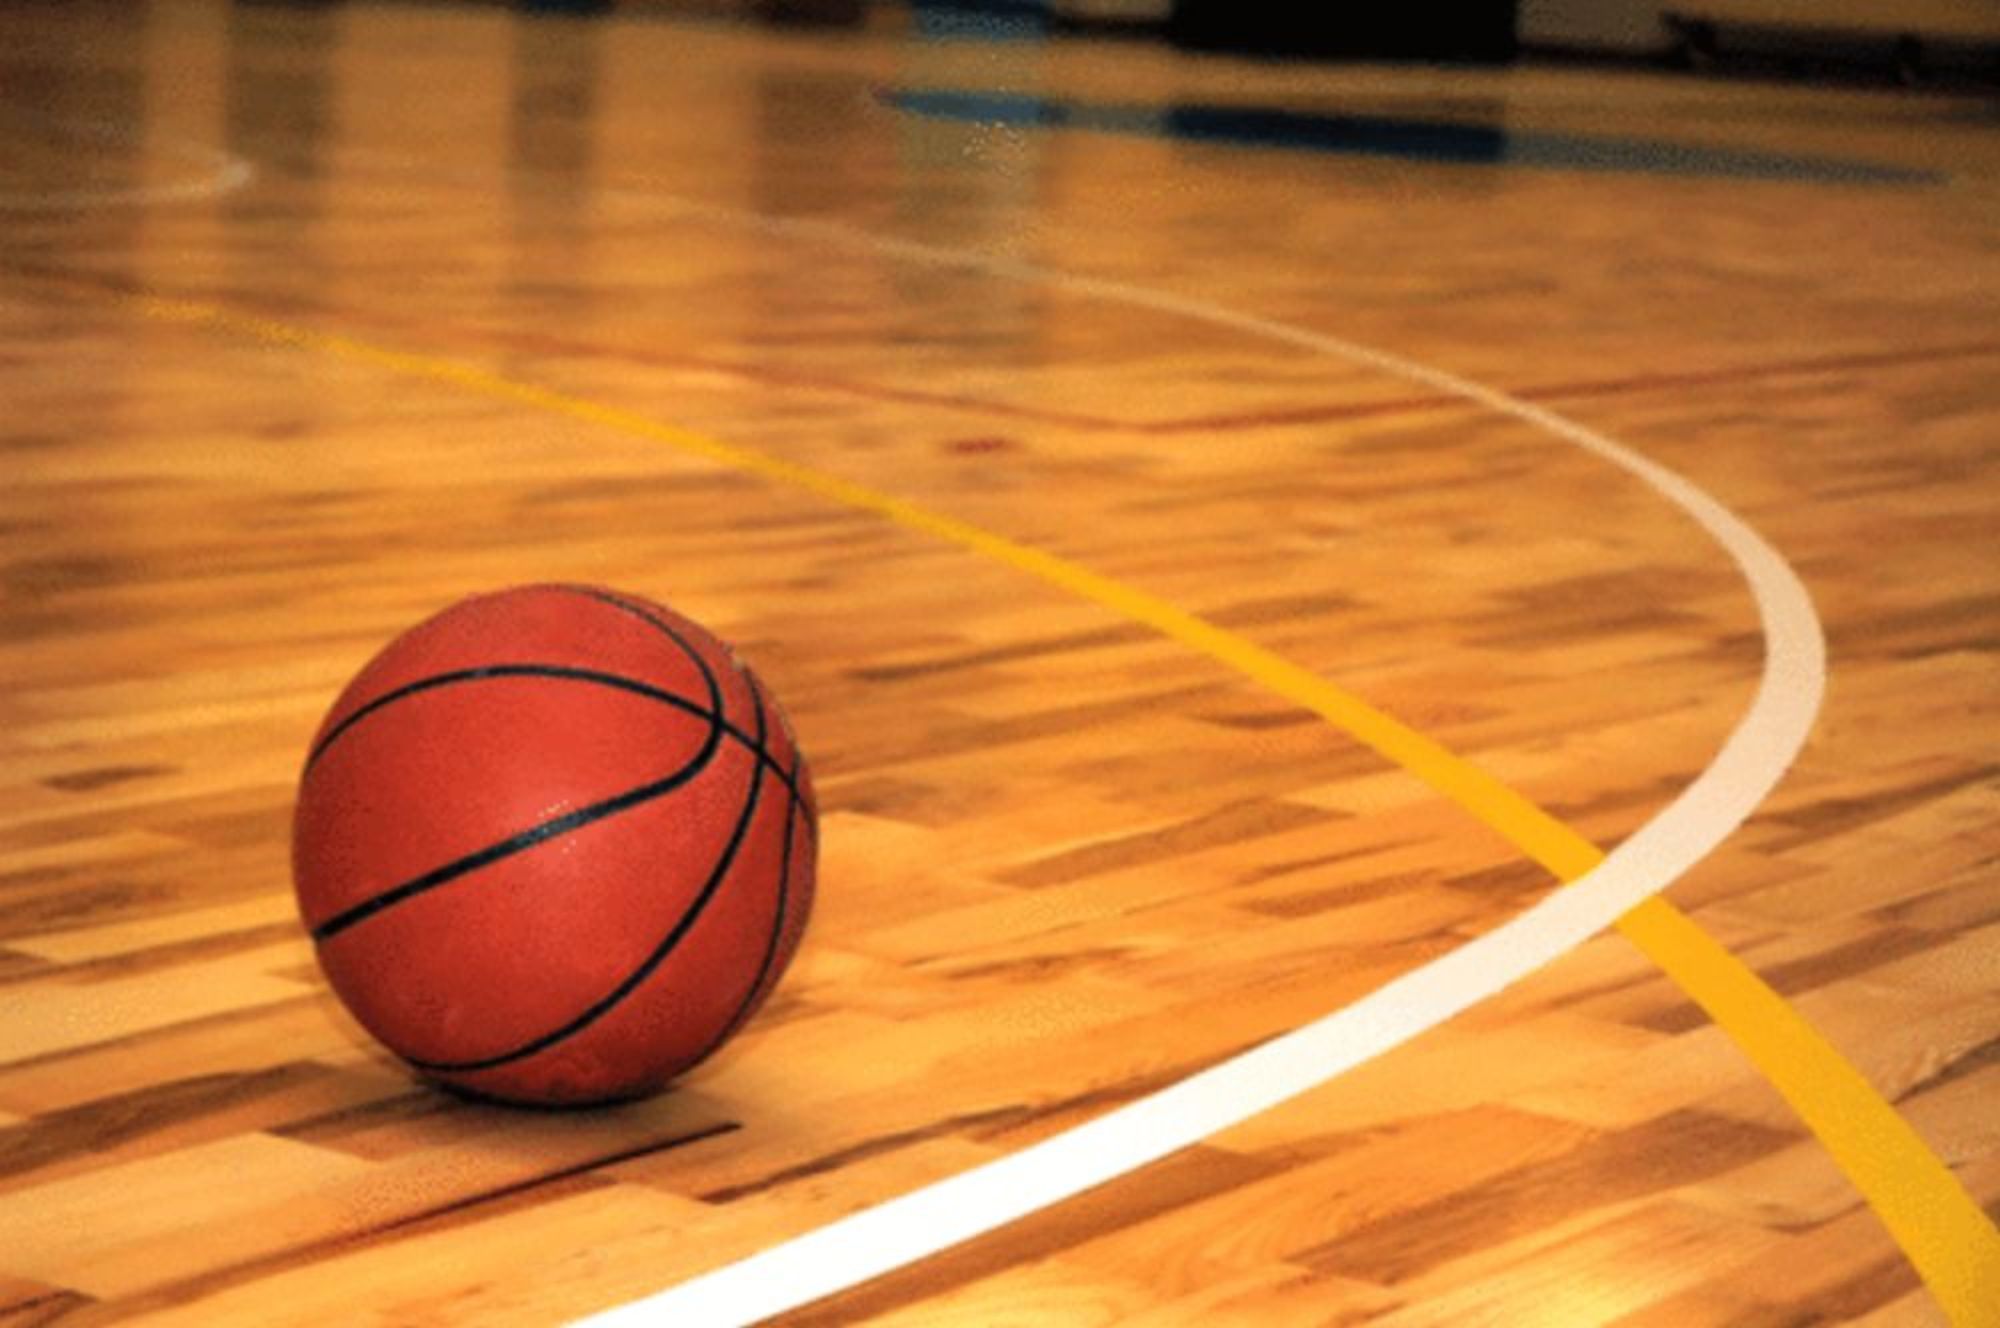 Basketball background image